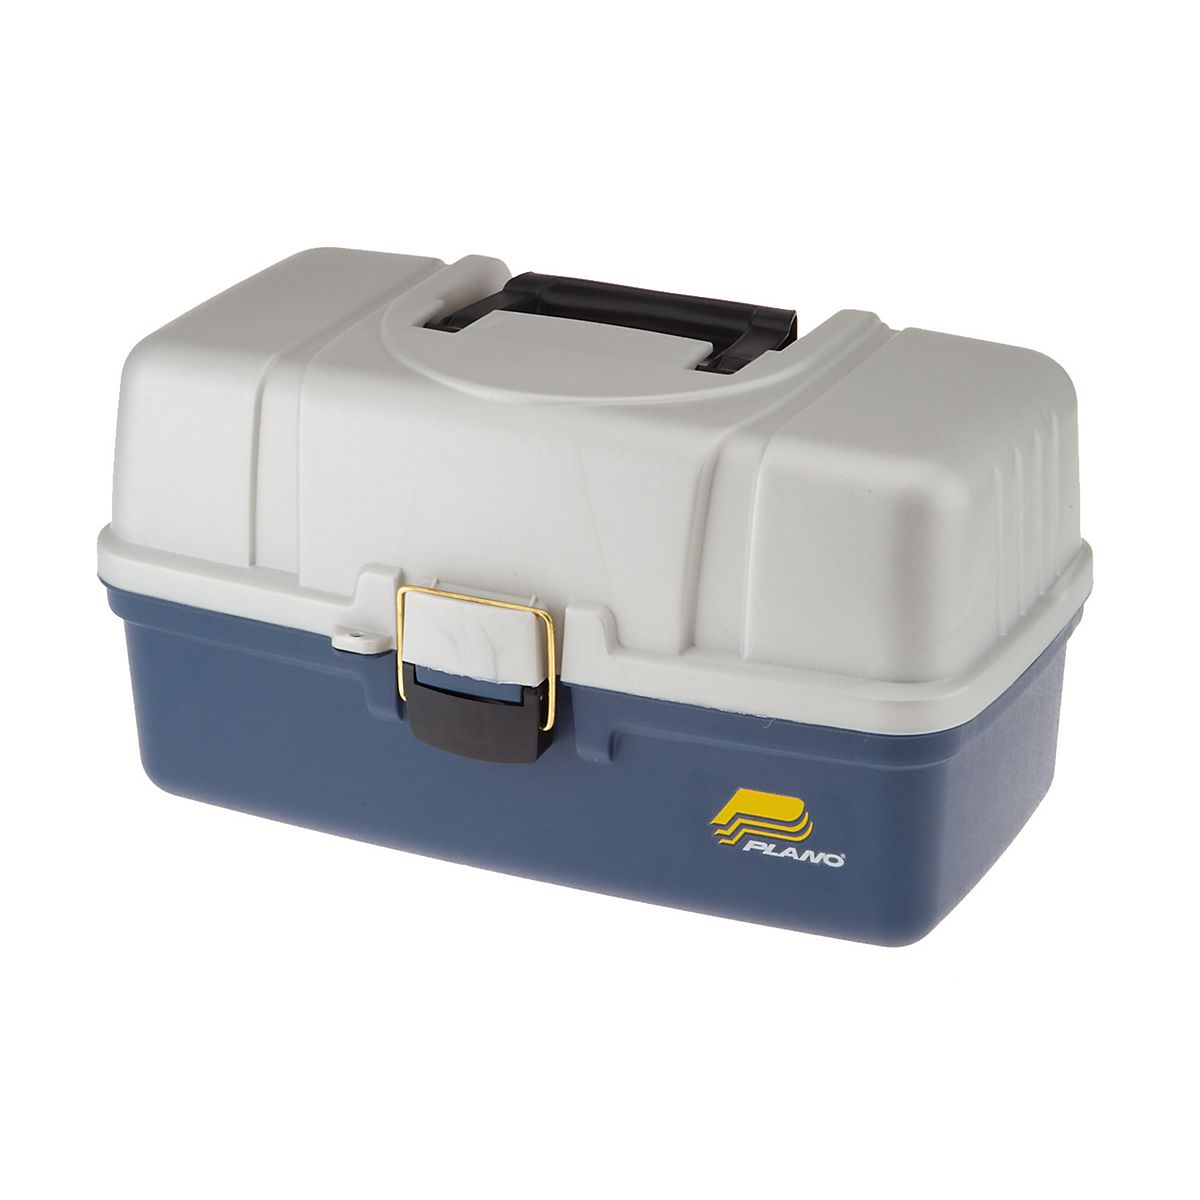 Glat Dalset Seneste nyt Plano® Large 3-Tray Tackle Box | Academy